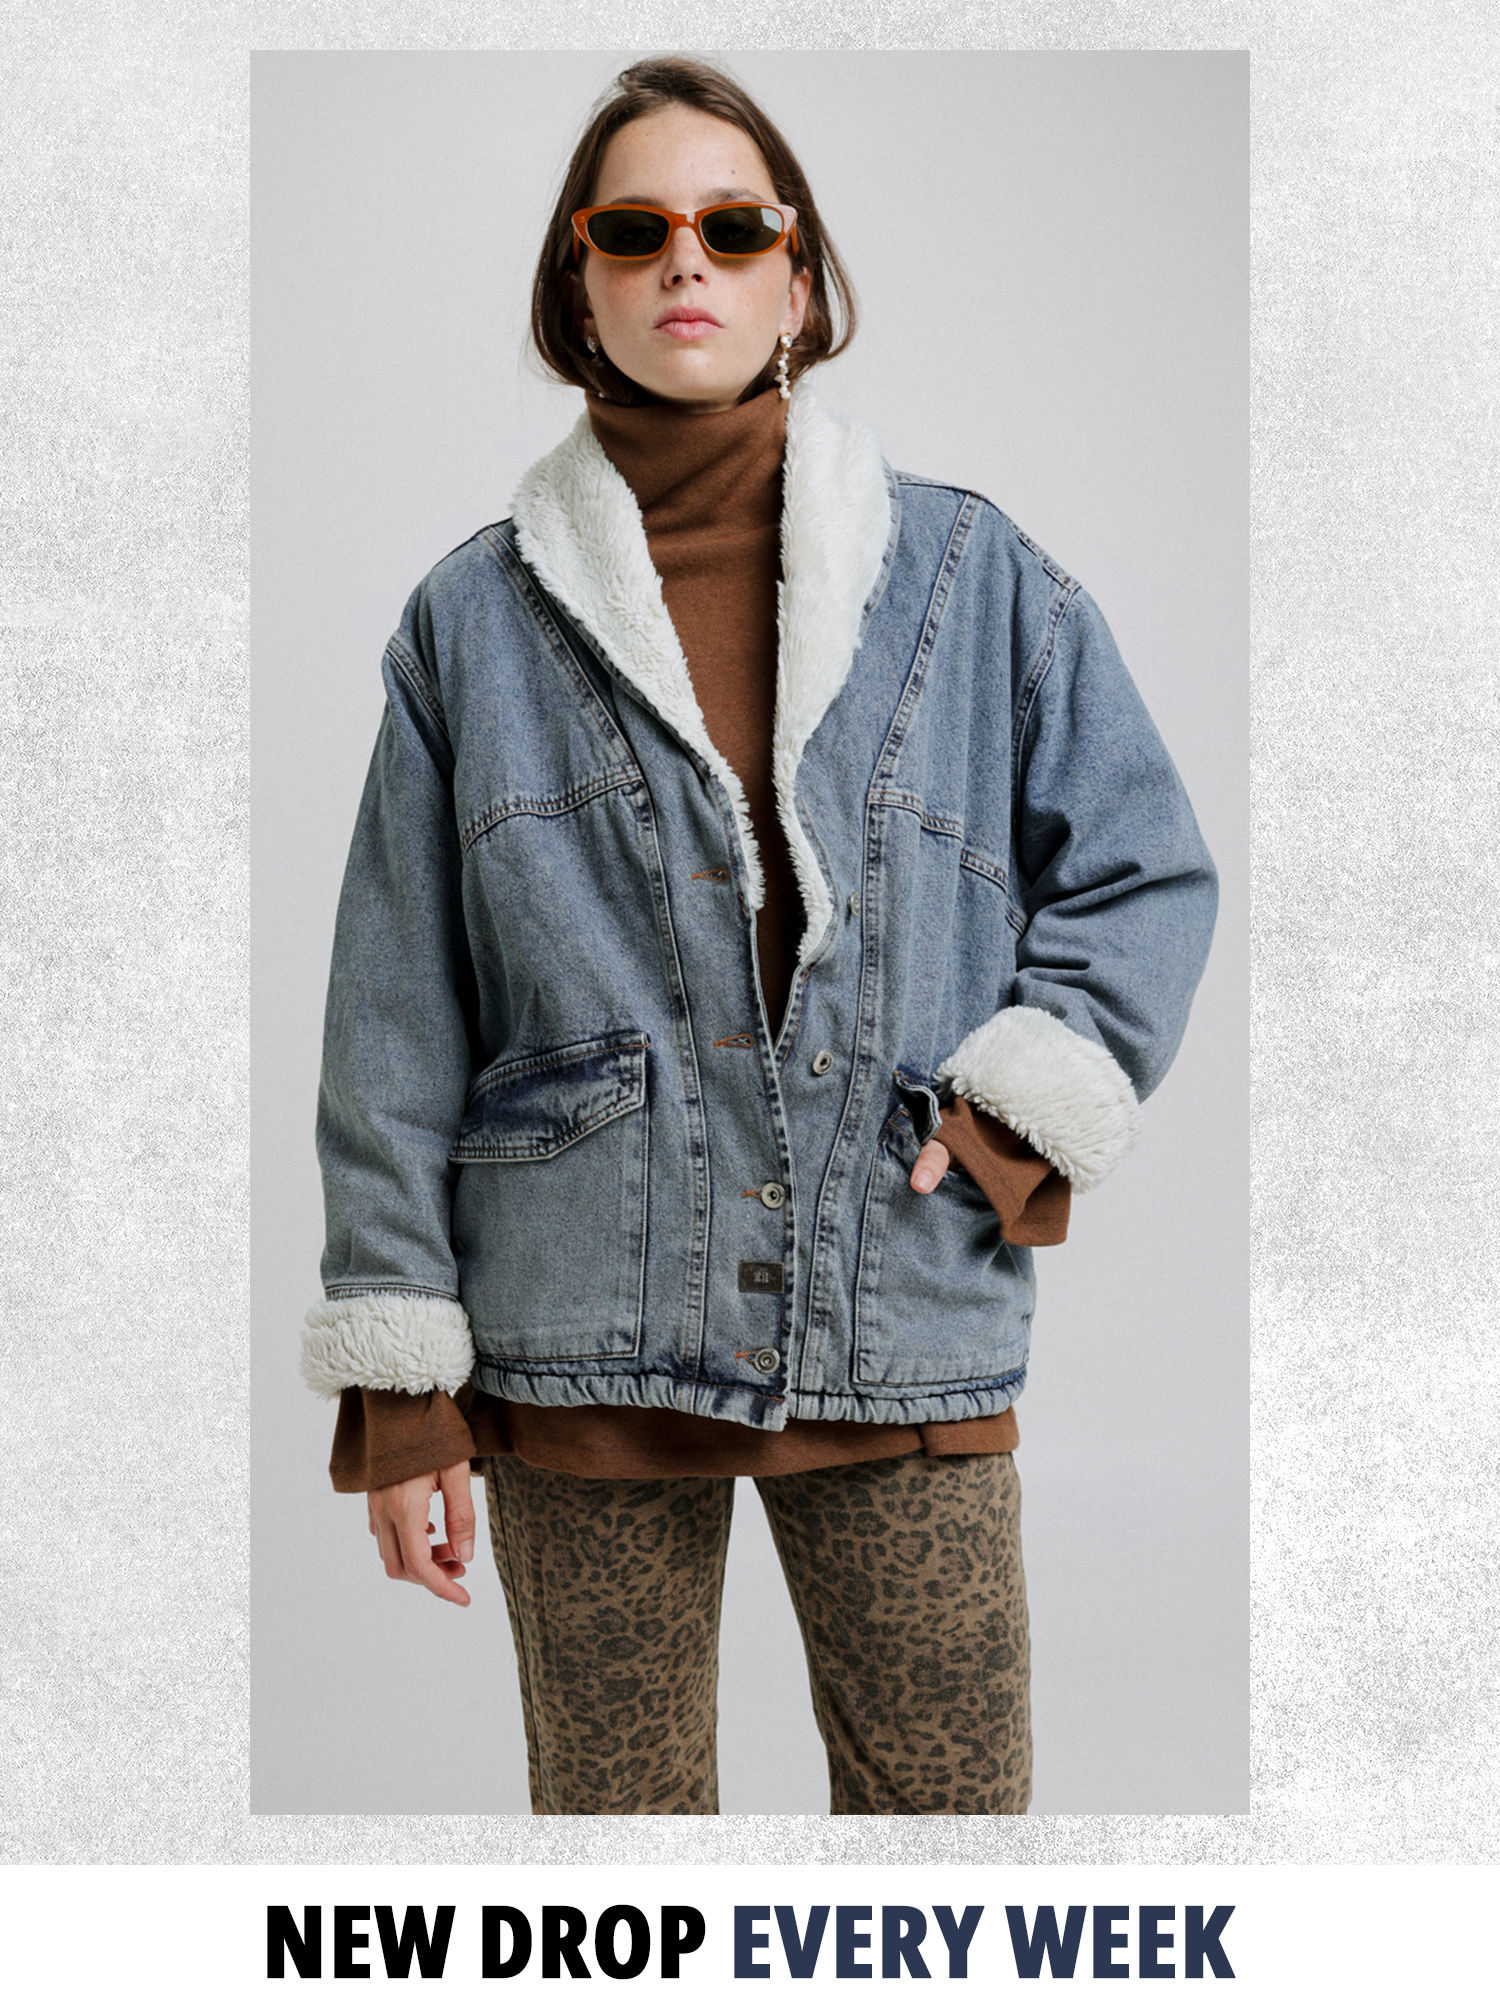 בית אופנה סיסטארז - חנות בגדים לנשים אונליין חורף 23' 24'